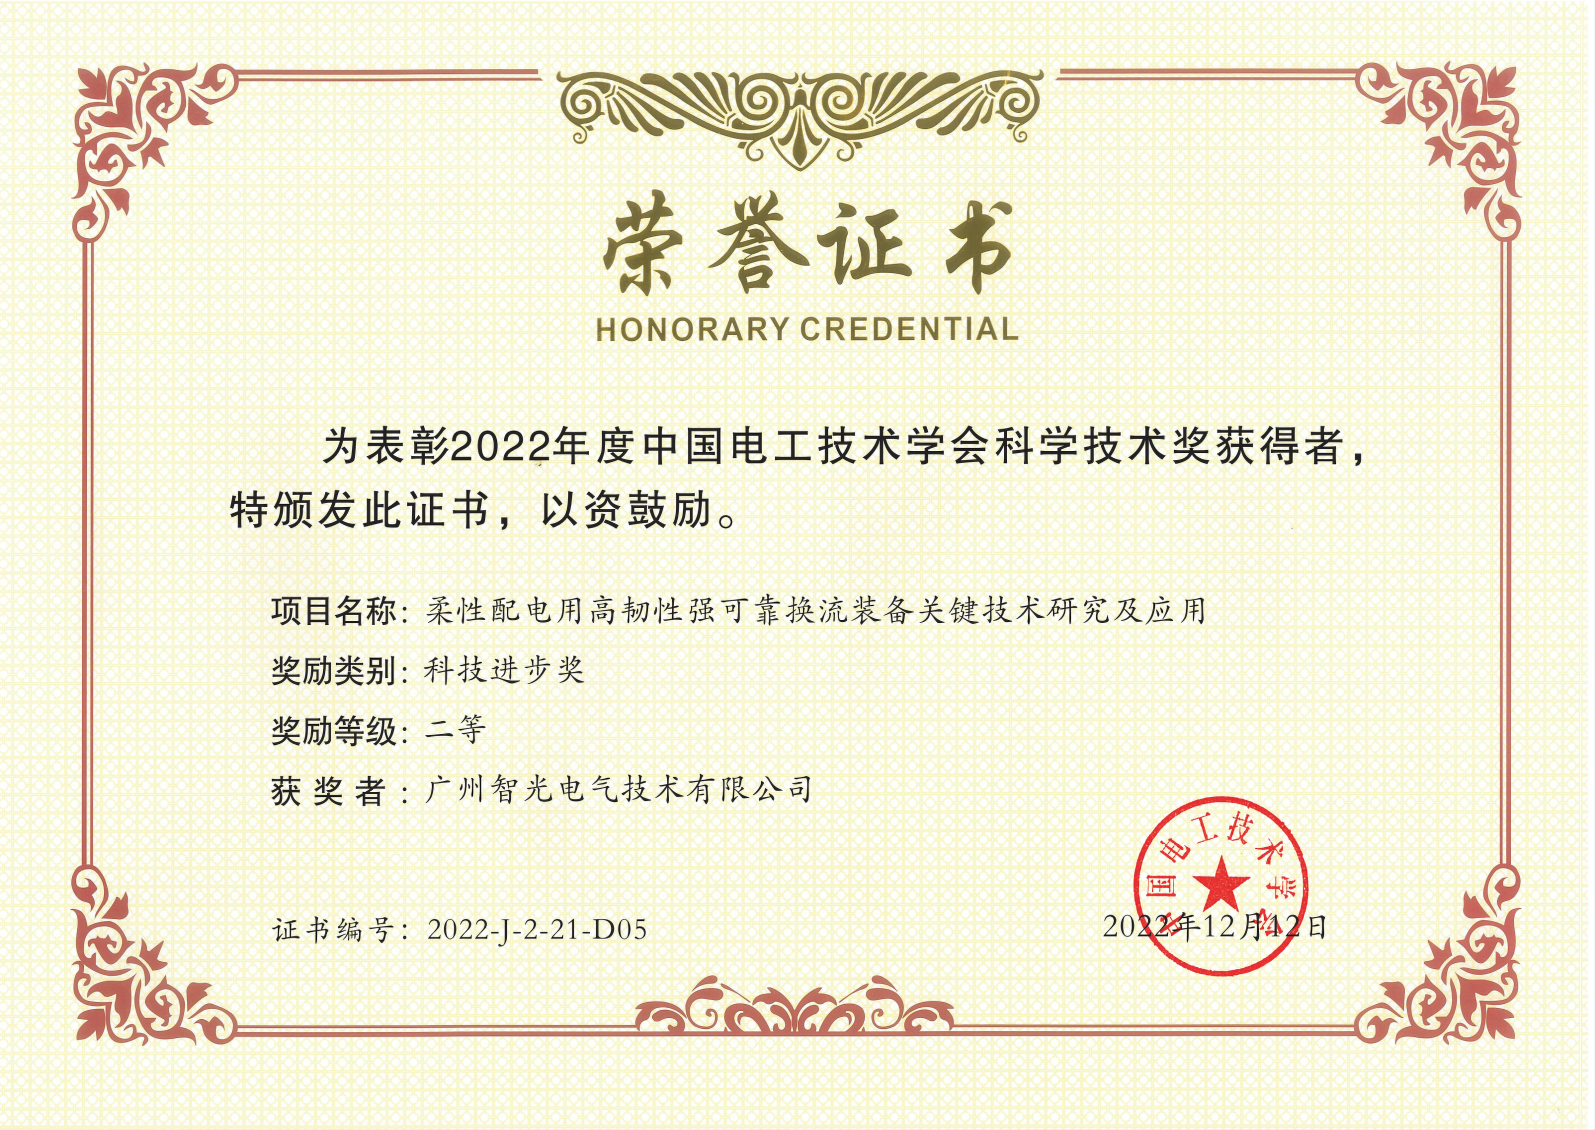 中國電工技術學會科學技術獎二等獎